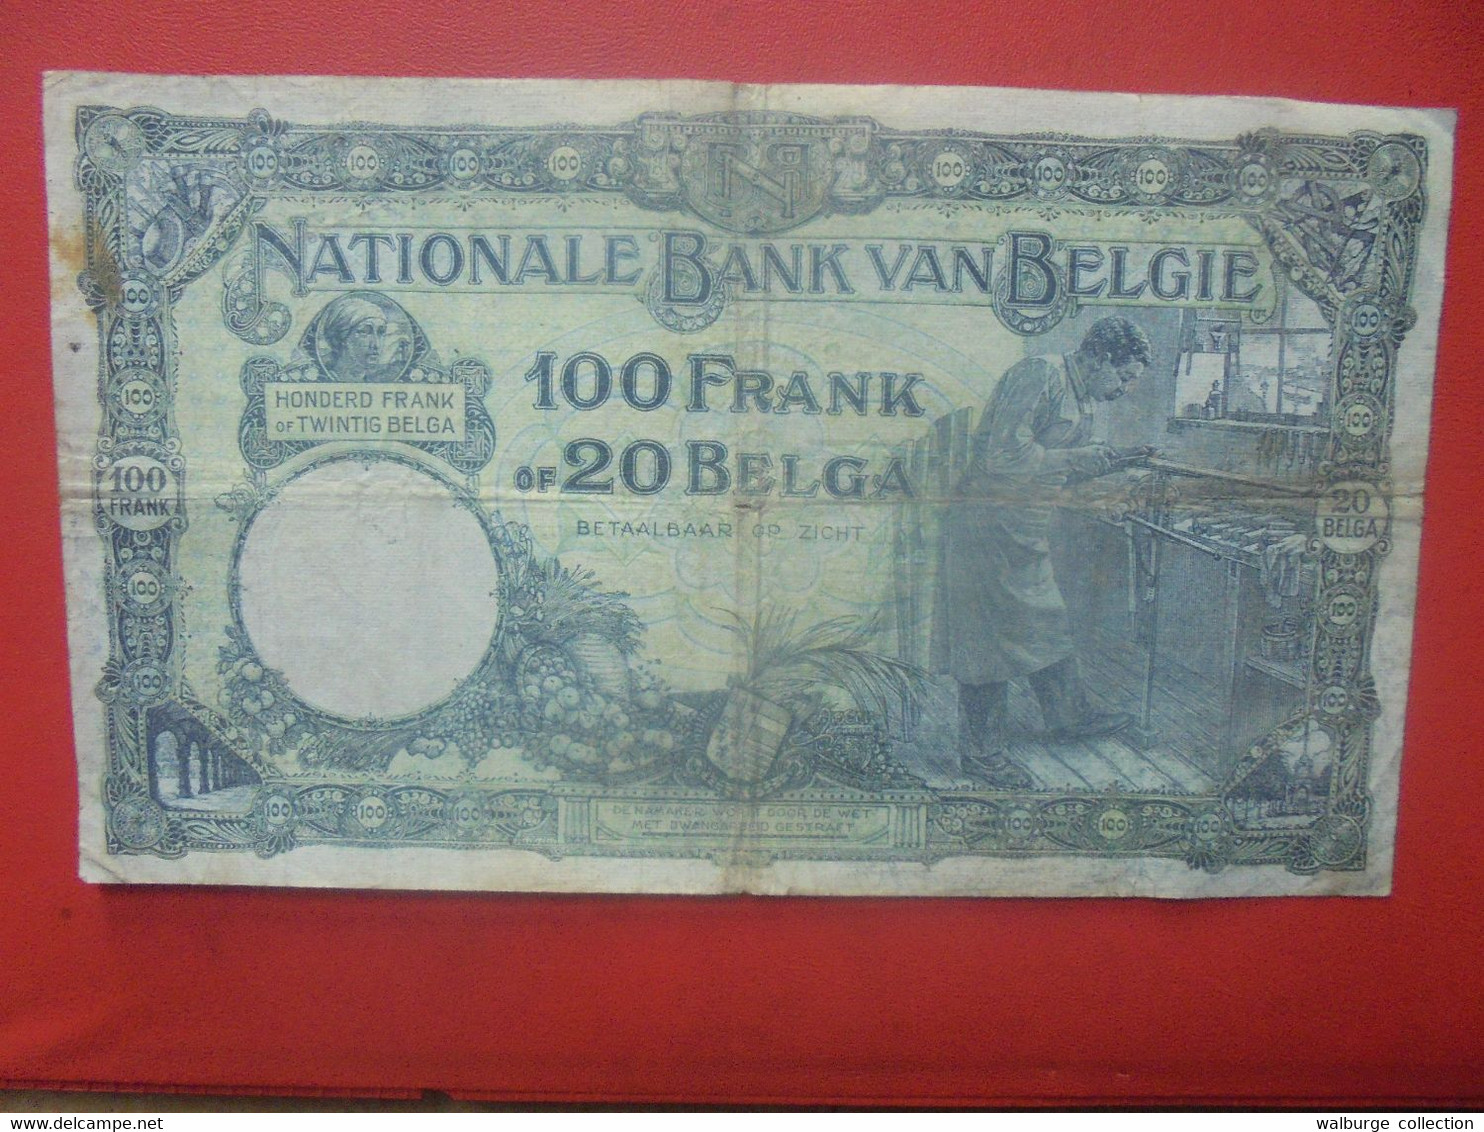 BELGIQUE 100 FRANCS 17-9-28 Circuler (B.18) - 100 Frank & 100 Frank-20 Belgas